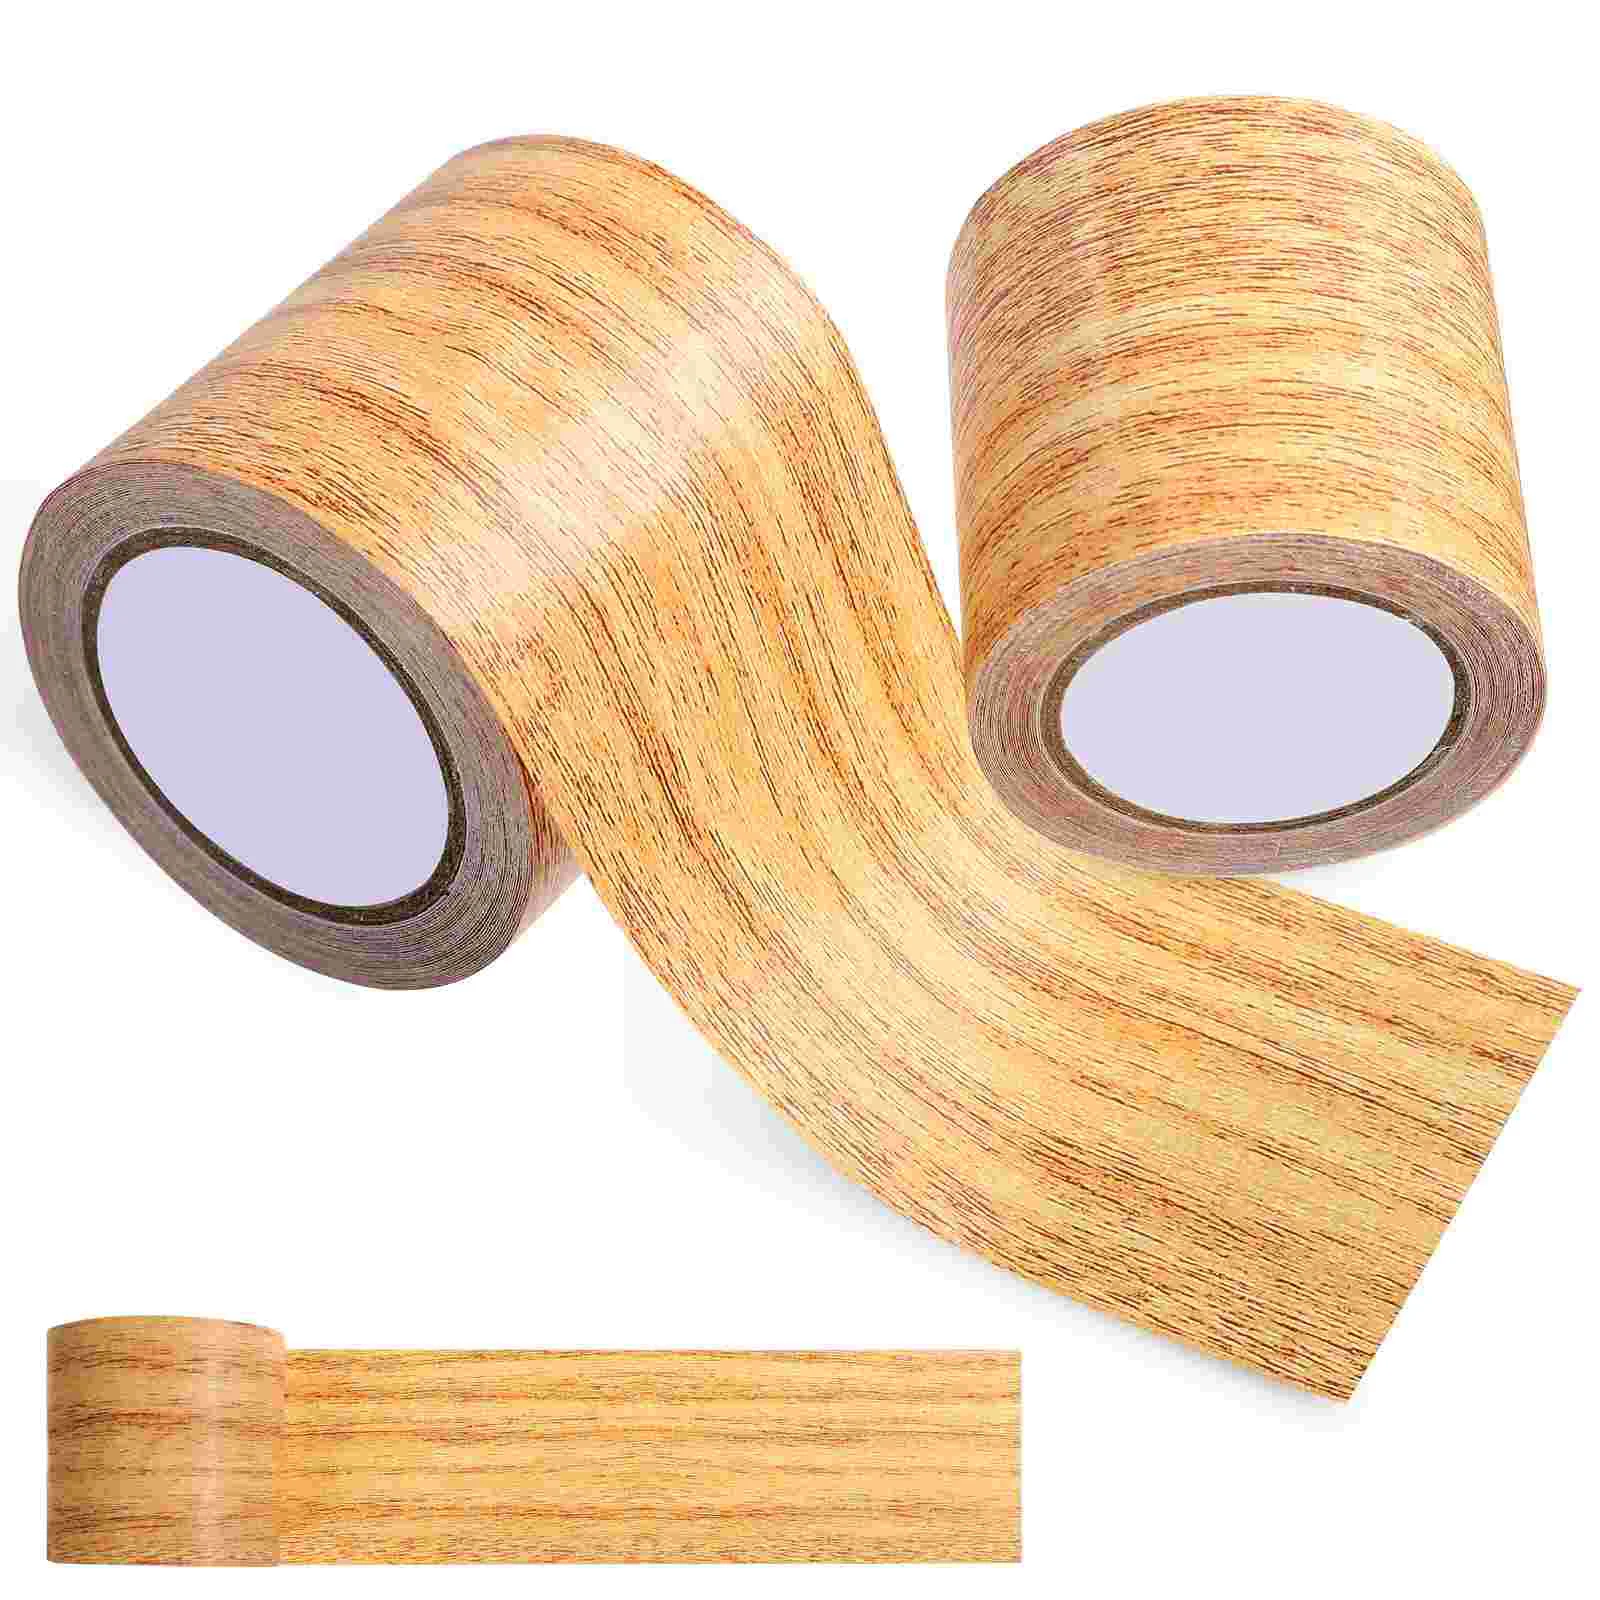 

2 Pcs Wood Grain Tape Woodsy Decor Furniture Repair Strips Baseboard Wood Tapes Pe Opp Repair Tapes Repair Patches